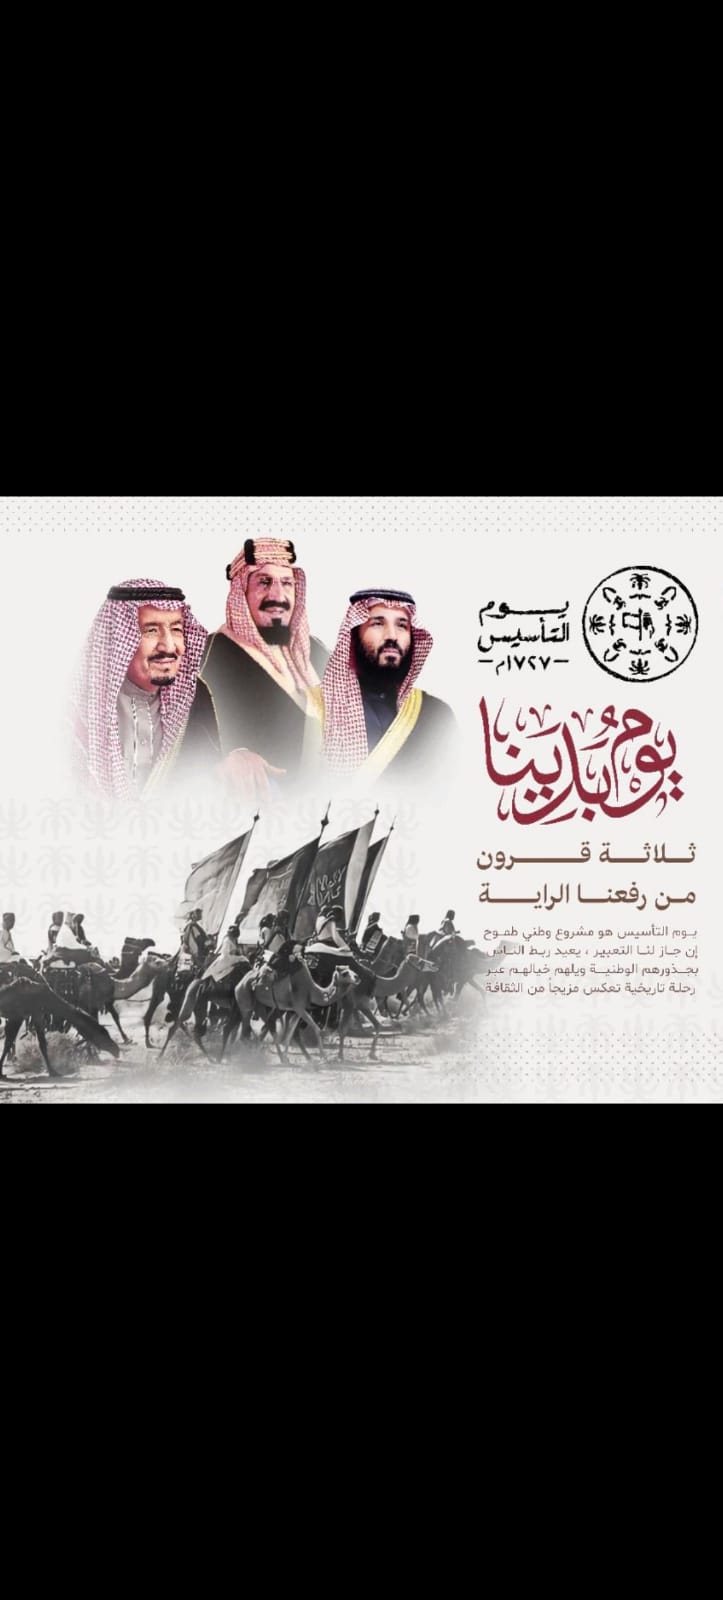 قادة السعودية الأفذاذ